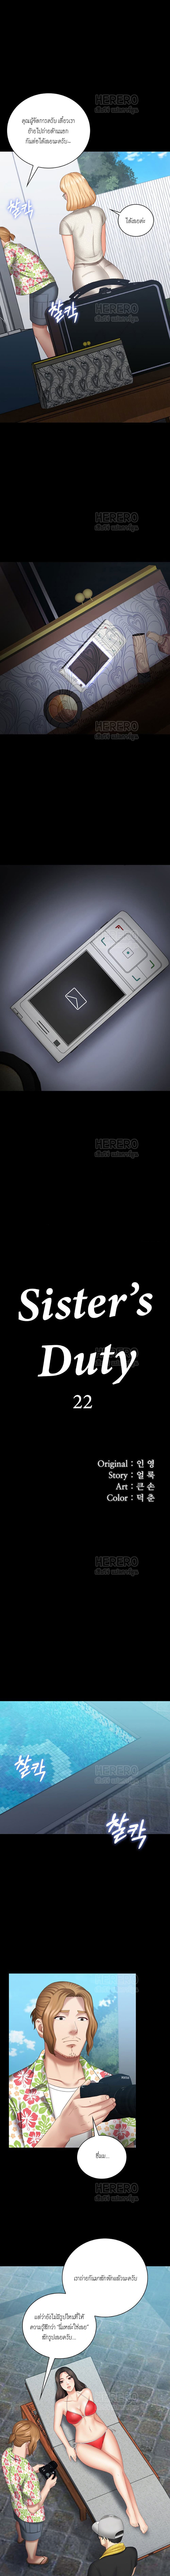 Sister's Duty 22-22